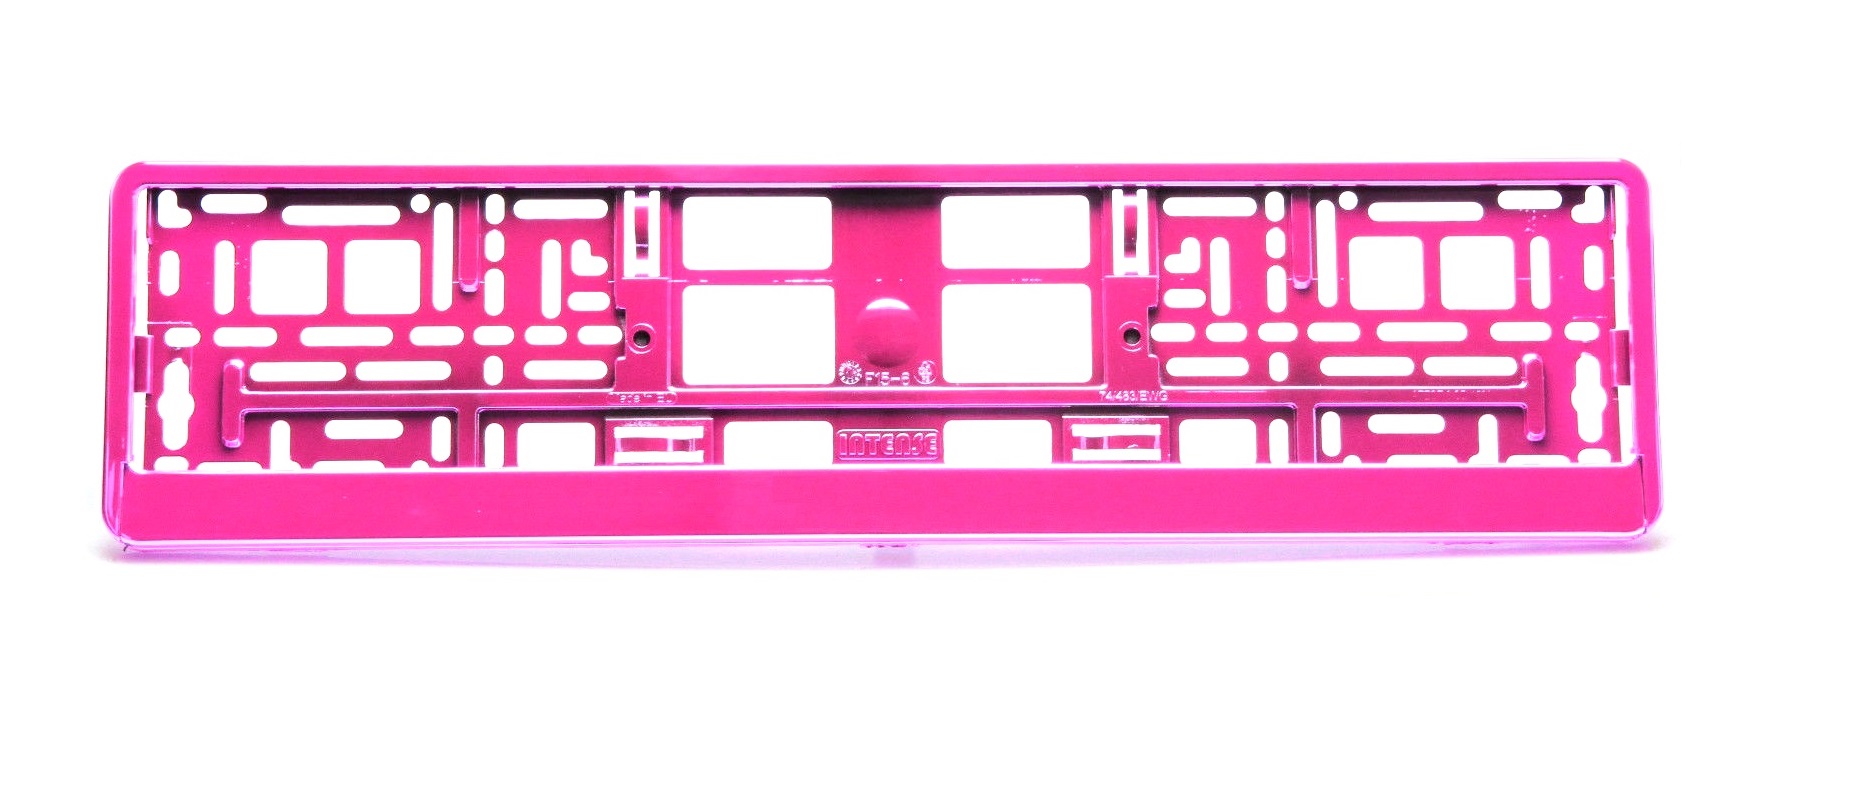 UTAL INTENSE Kennzeichenhalter Metallisiert Pink, Kennzeichenhalter, Rund  ums Fahrzeug